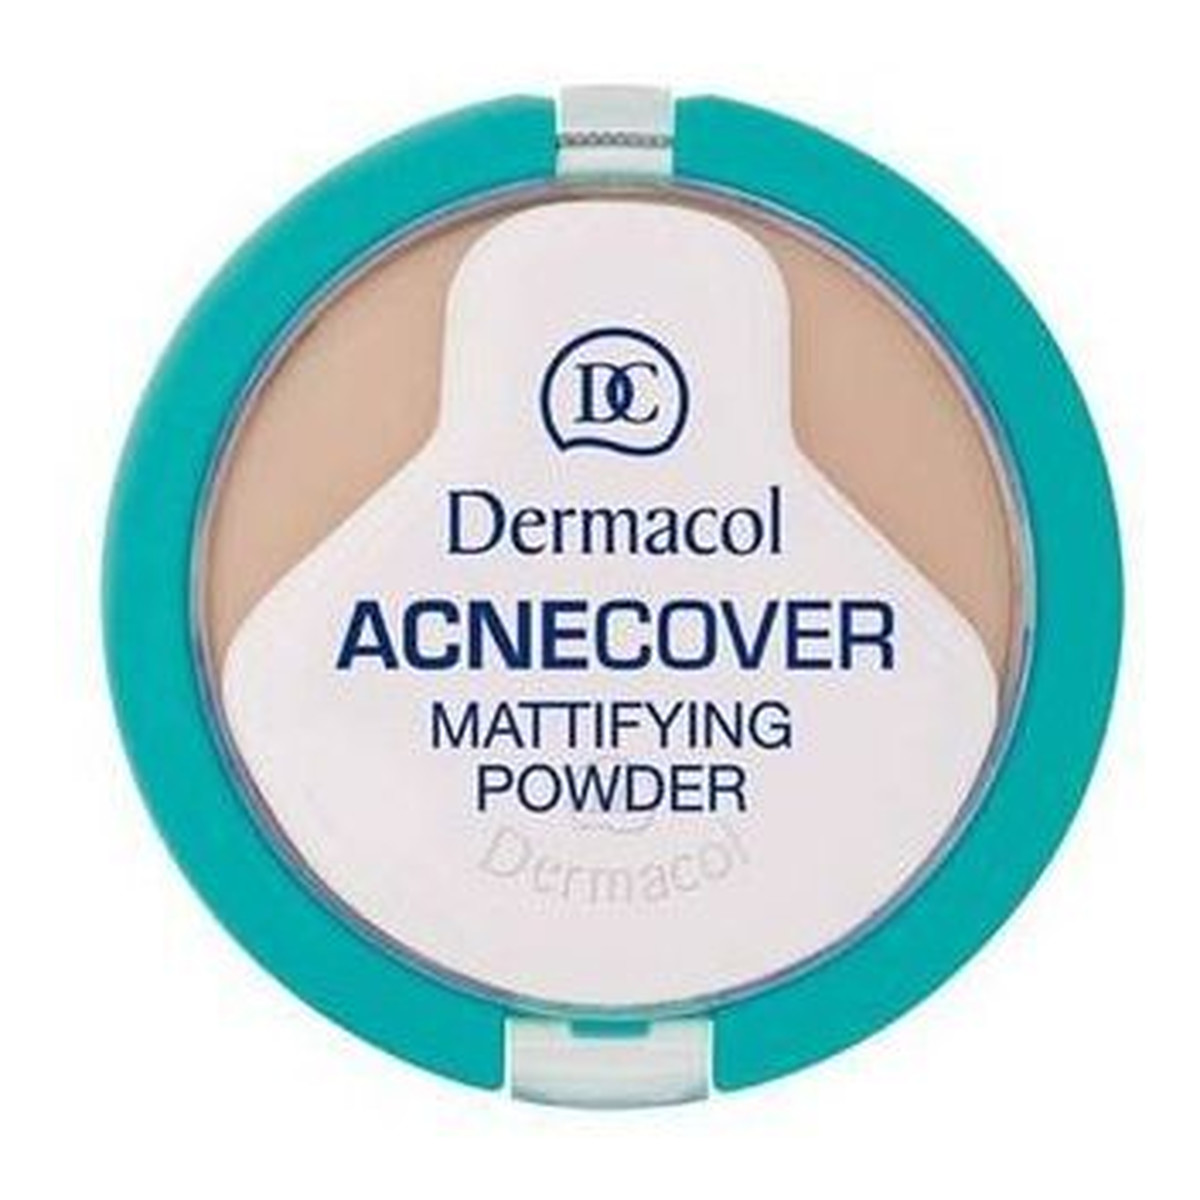 Dermacol Acnecover Mattifying matujący puder w kompakcie 11g